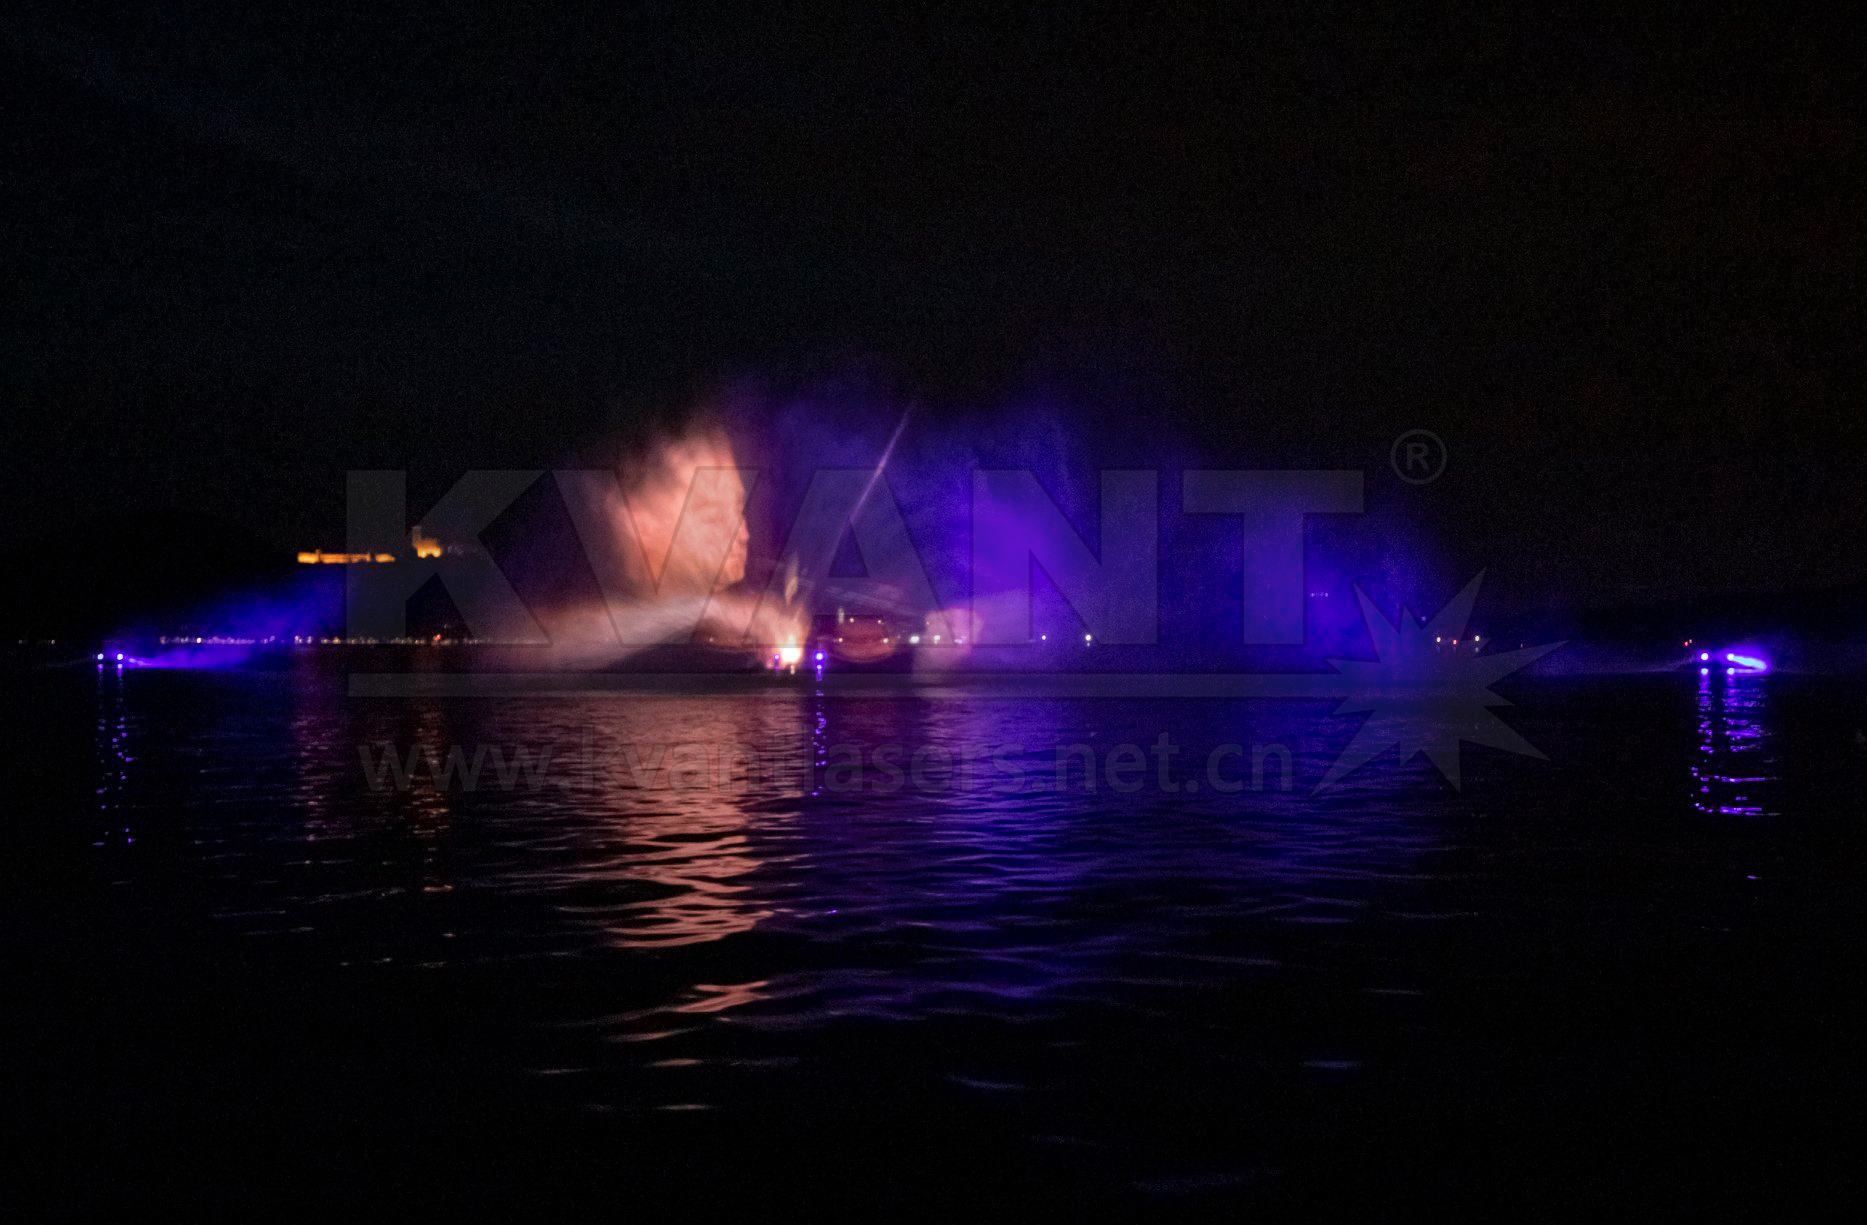 意大利馬焦雷湖上演水上舞臺大型水幕激光秀